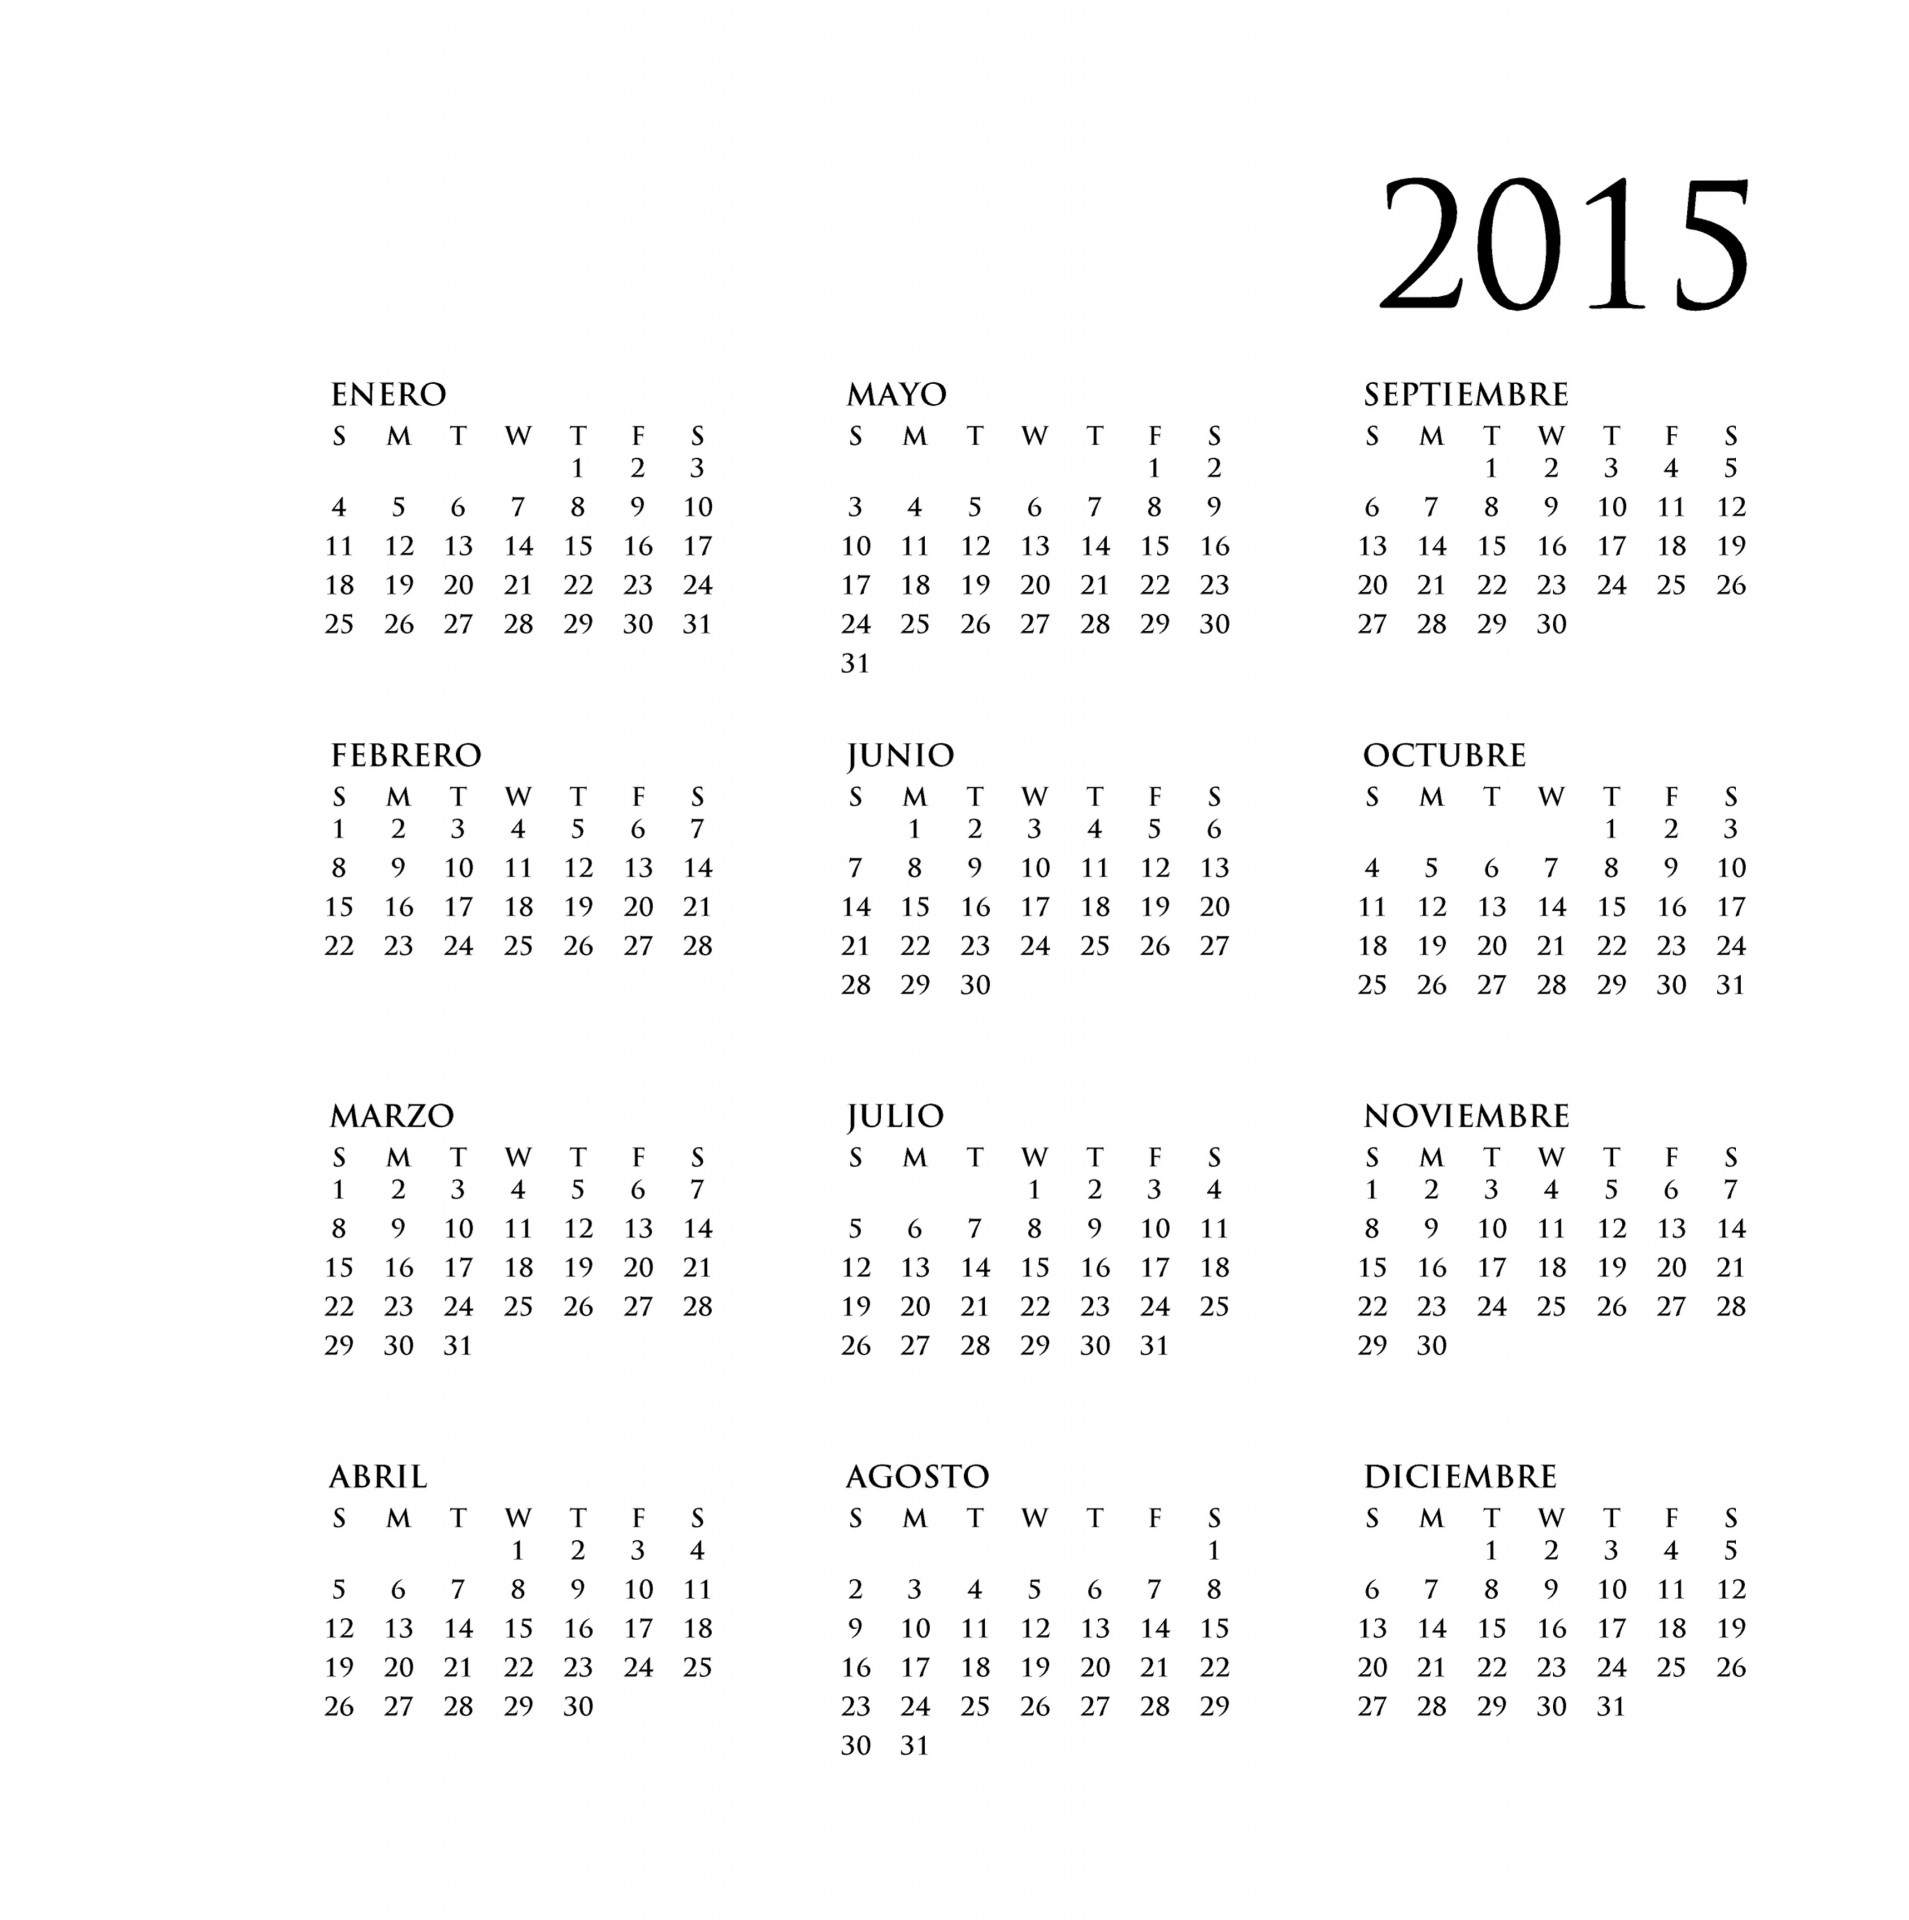 2015 calendar anual în limba spaniolă